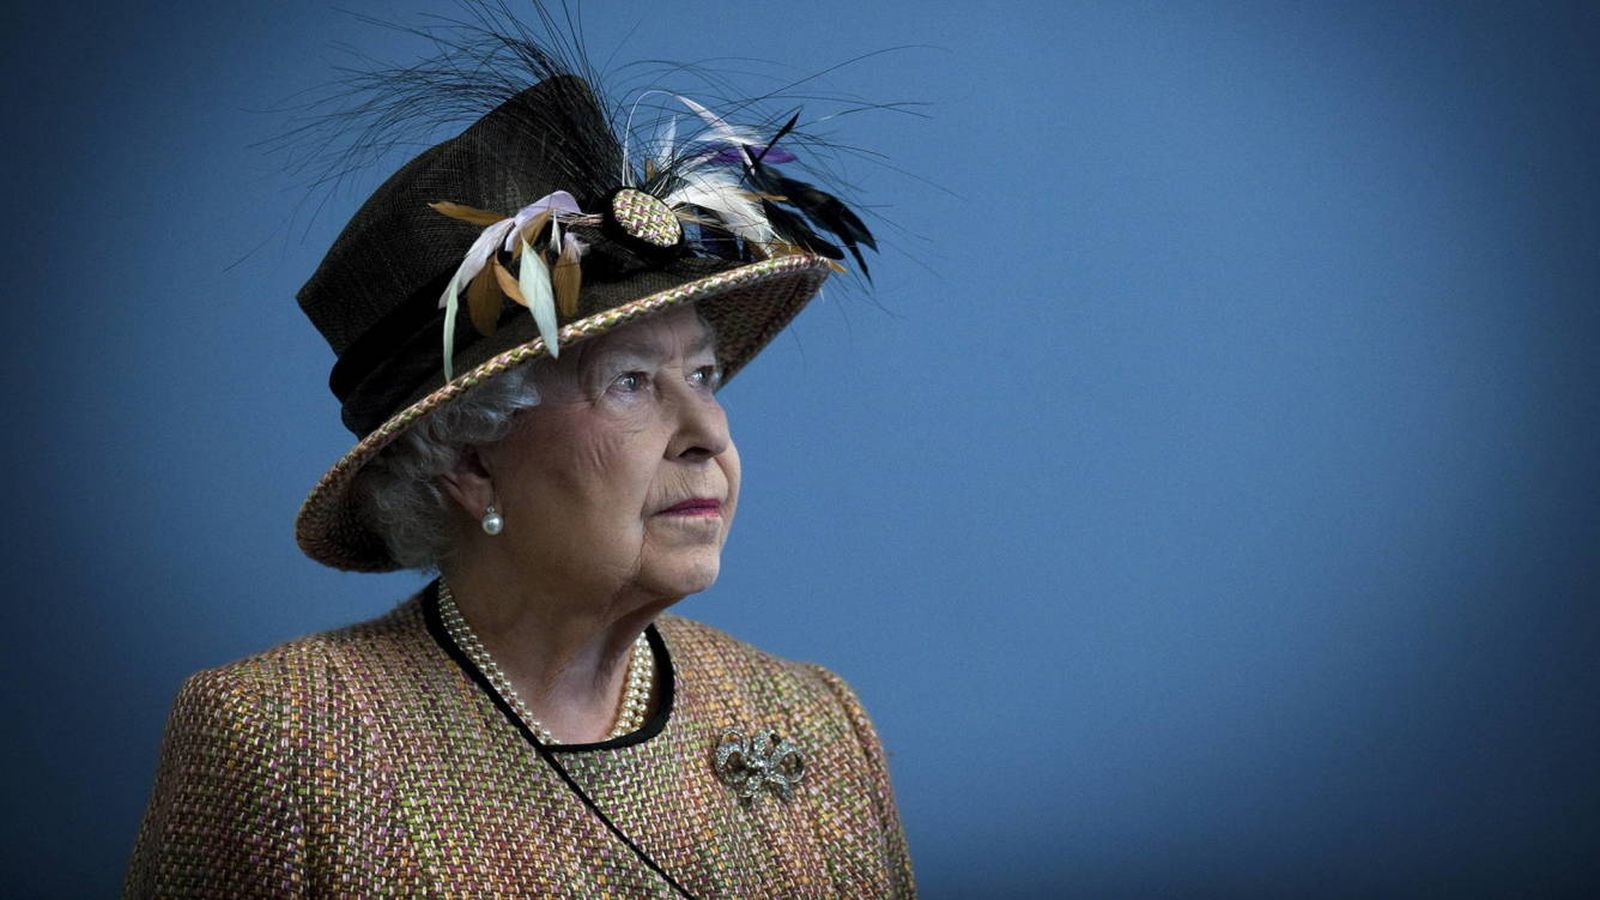 Foto: La reina Isabel II en una imagen de archivo. (Reuters)